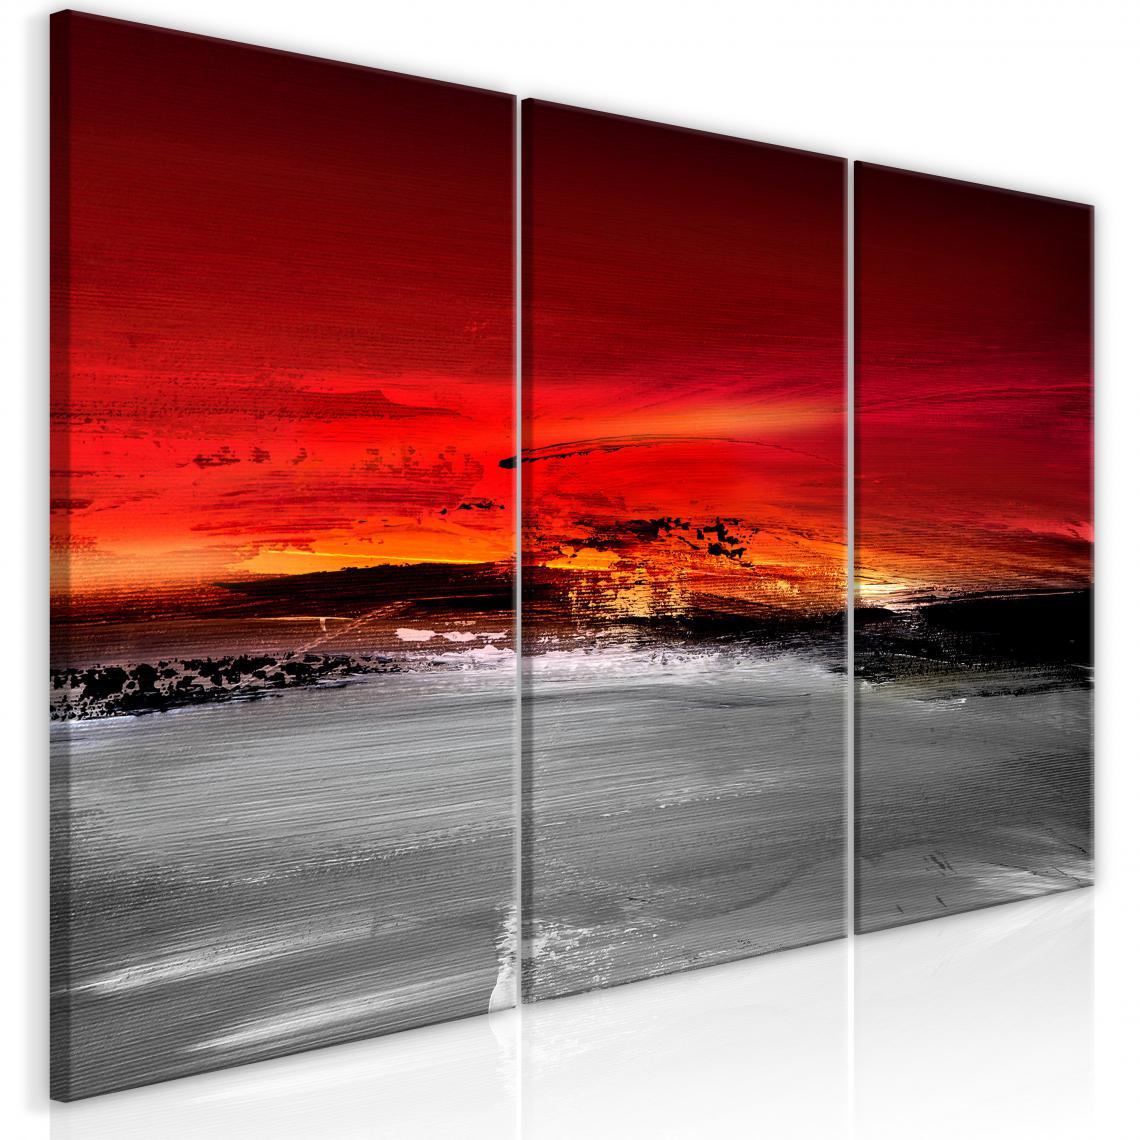 Decoshop26 - Tableau sur toile en 4 panneaux décoration murale image imprimée cadre en bois à suspendre Crimson Landscape 120x60 cm 11_0010253 - Tableaux, peintures